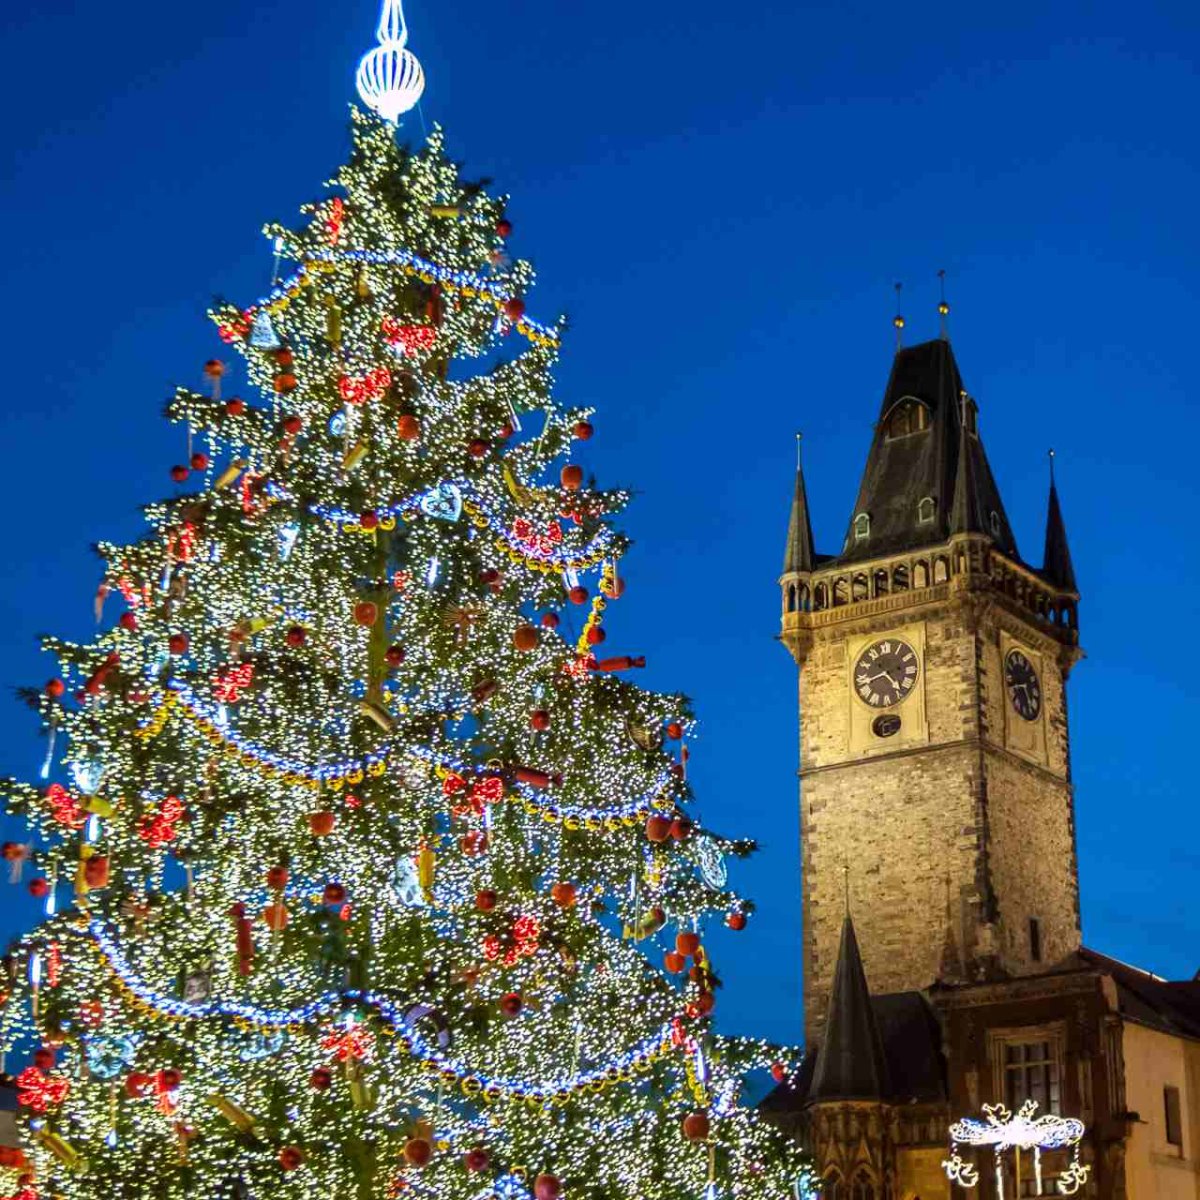 χριστουγεννιάτικες αγορές ανοιχτές στον κόσμο εν μέσω πανδημίας με ωραία δέντρα